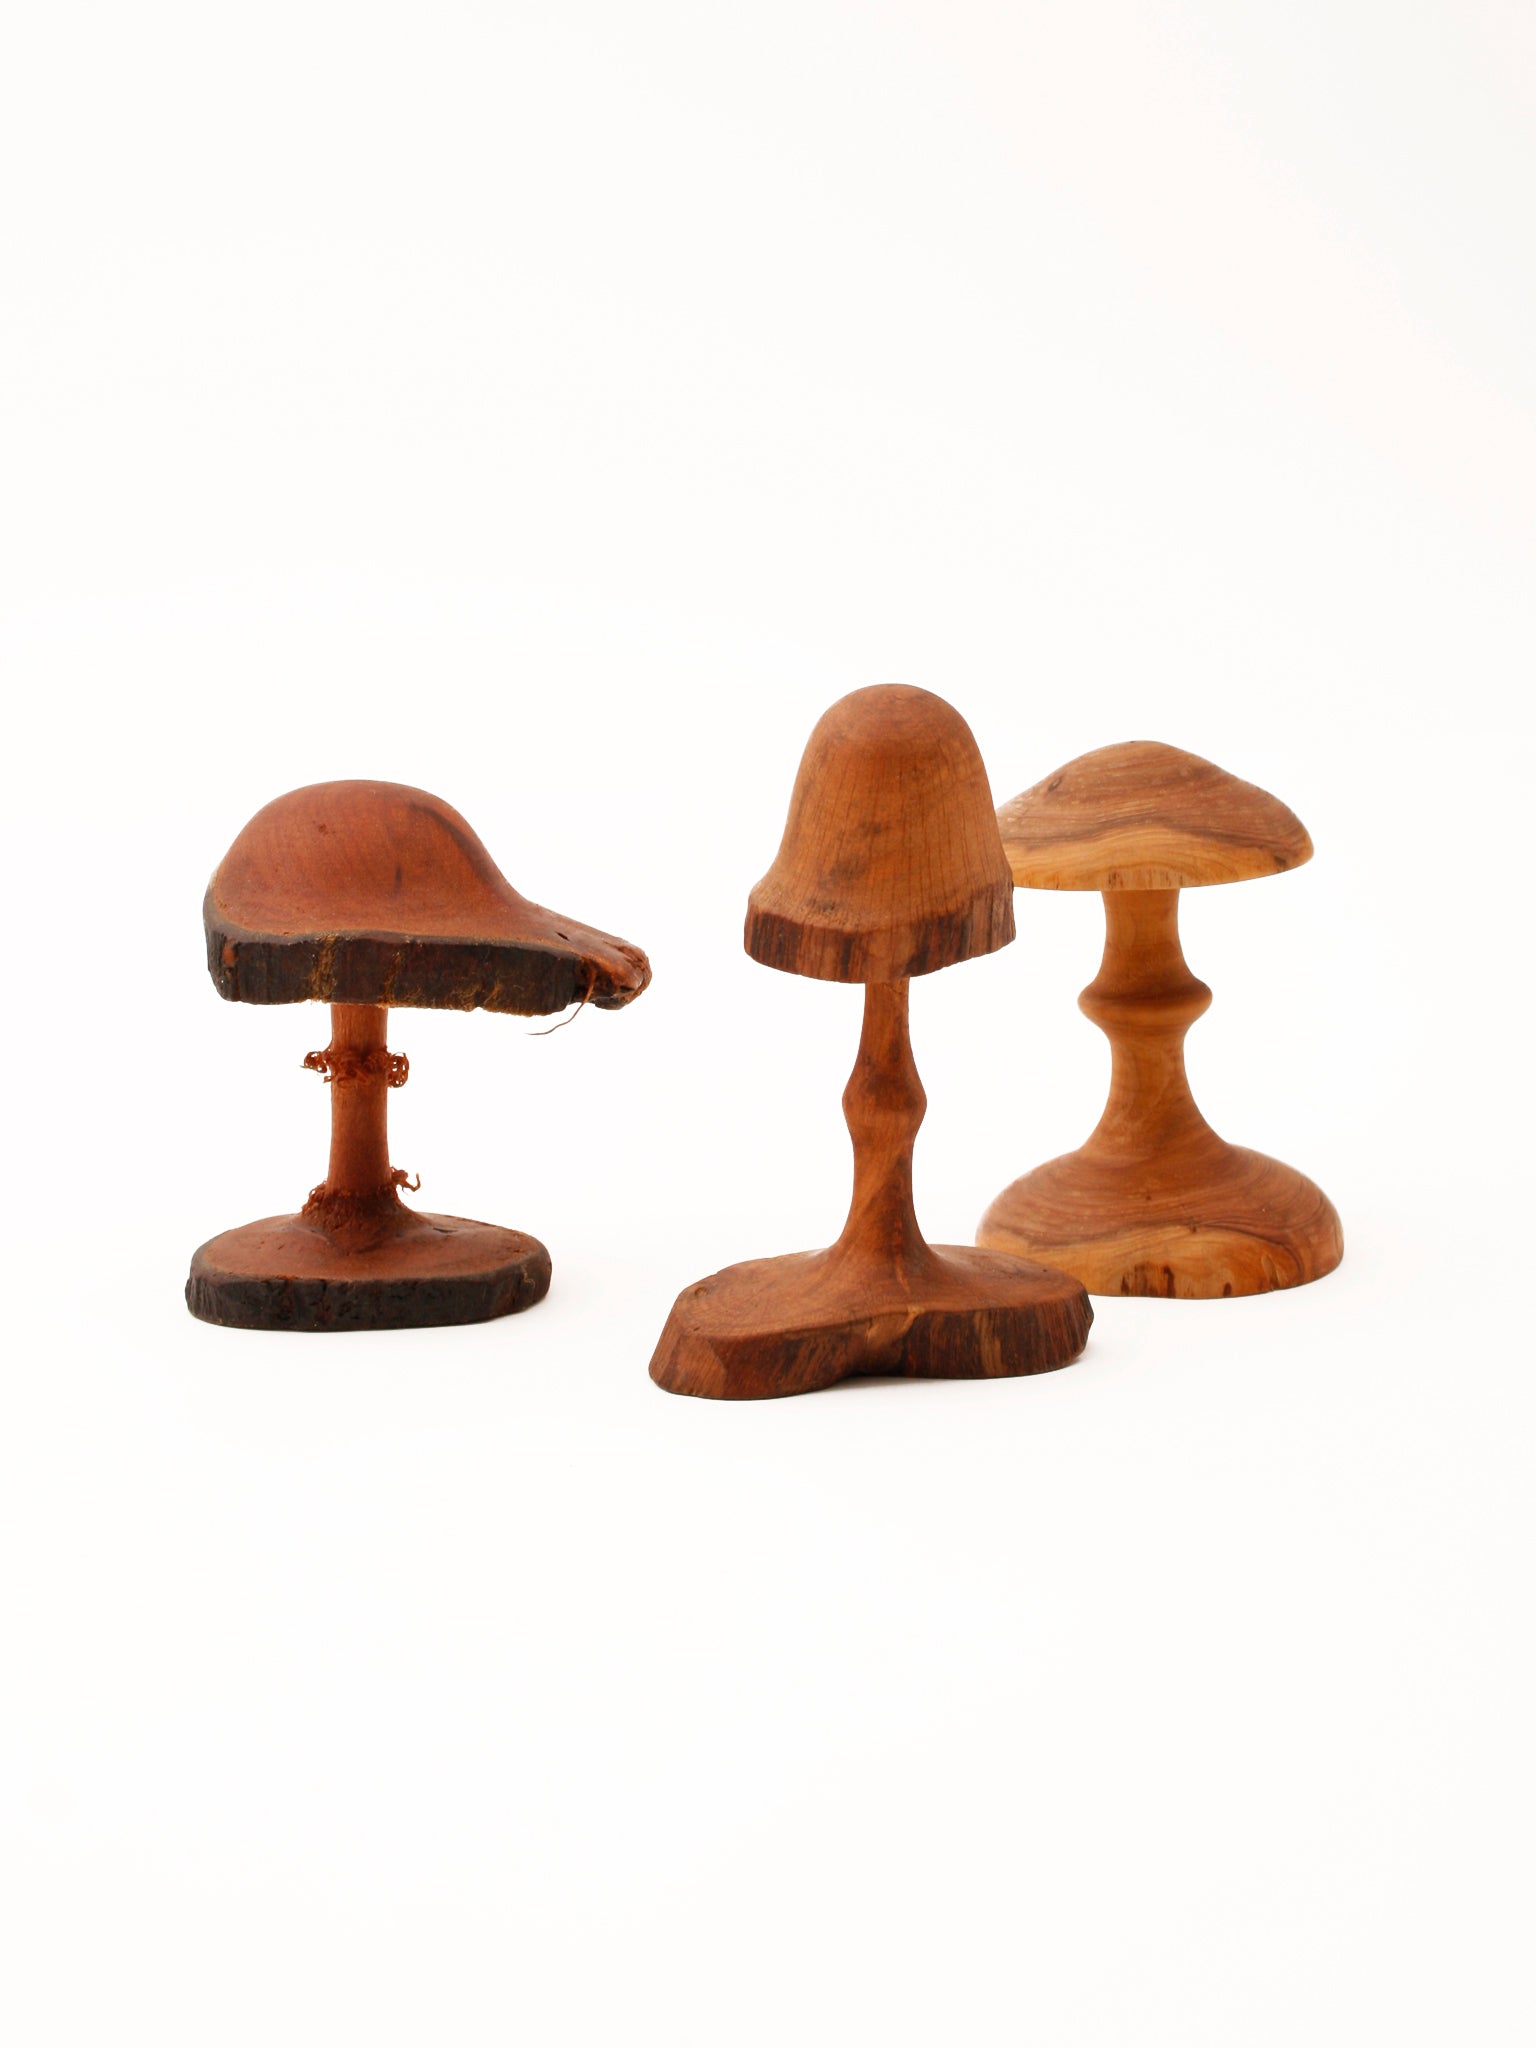 Wooden Mushroom, hand-carved, Porcini